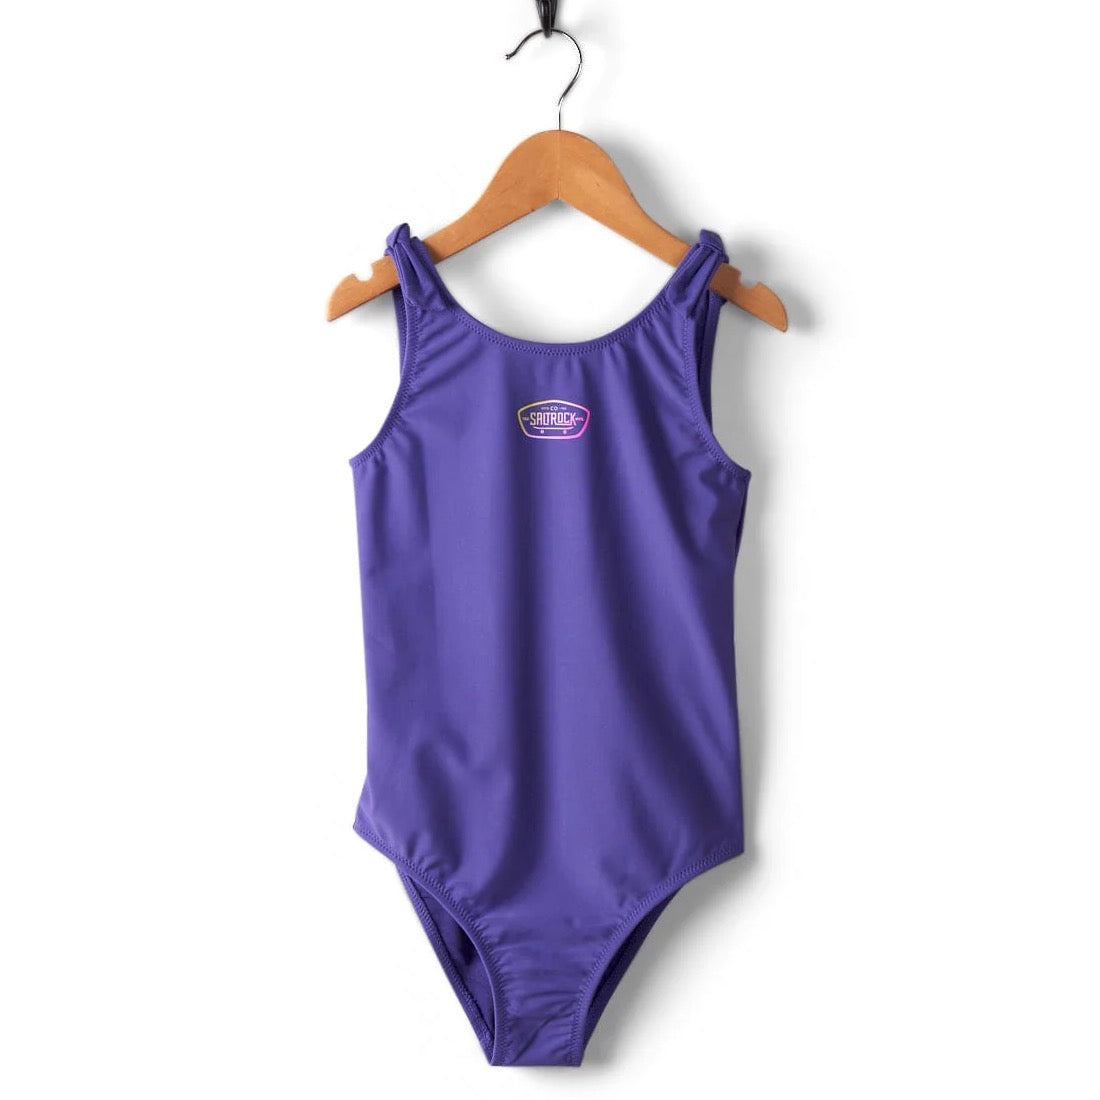 Saltrock Girls Purple Hardskate Swimsuit Clothing 6YRS / Purple,8YRS / Purple,10YRS / Purple